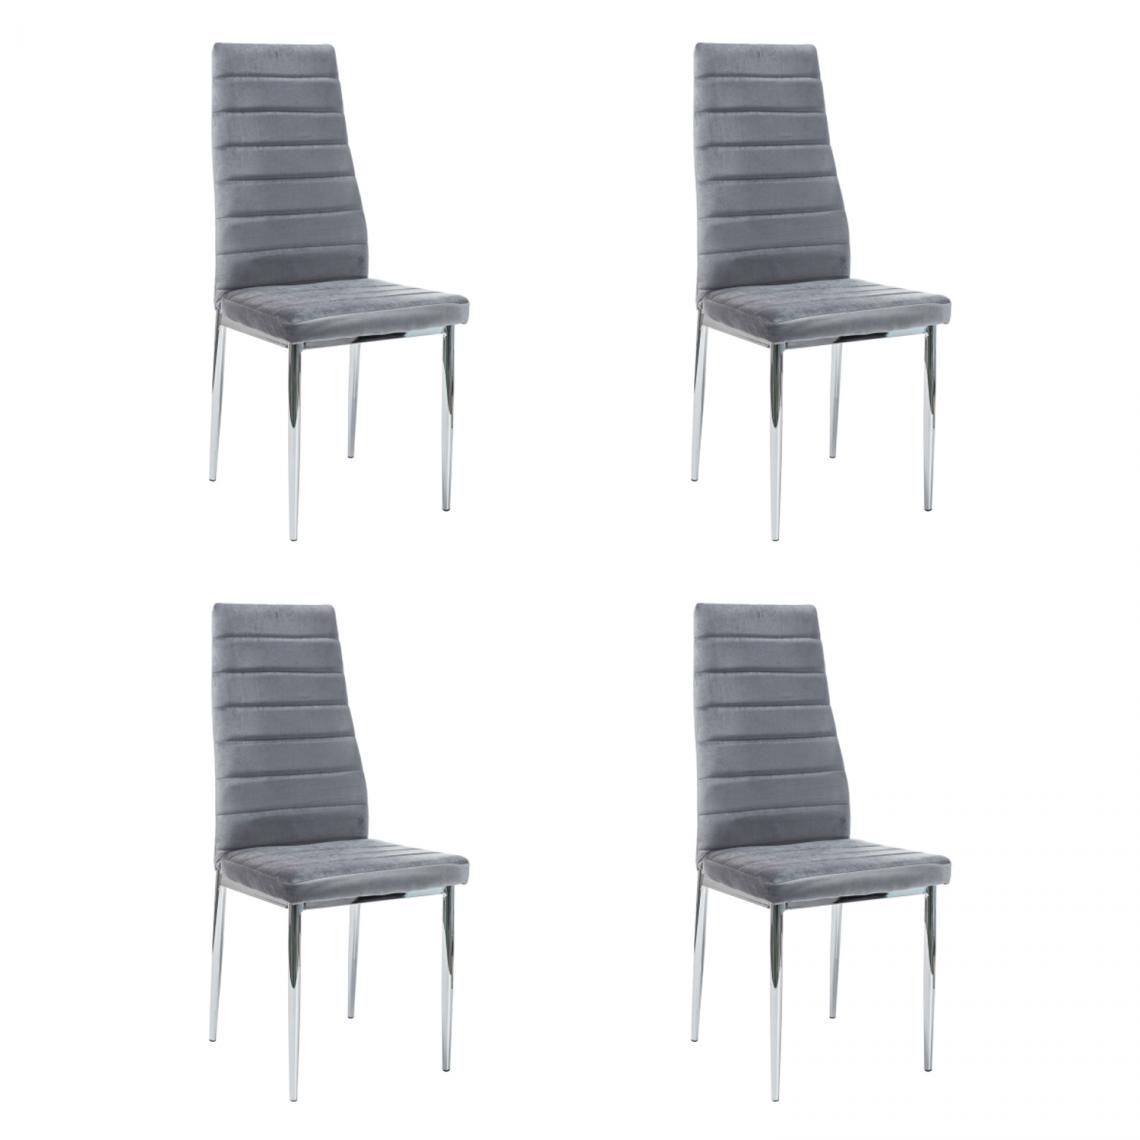 Hucoco - NOOMI - Lot de 4 chaises pour salle à manger/salon - 96x40x38 cm - Tissu velouté - Style glamour - Gris - Chaises